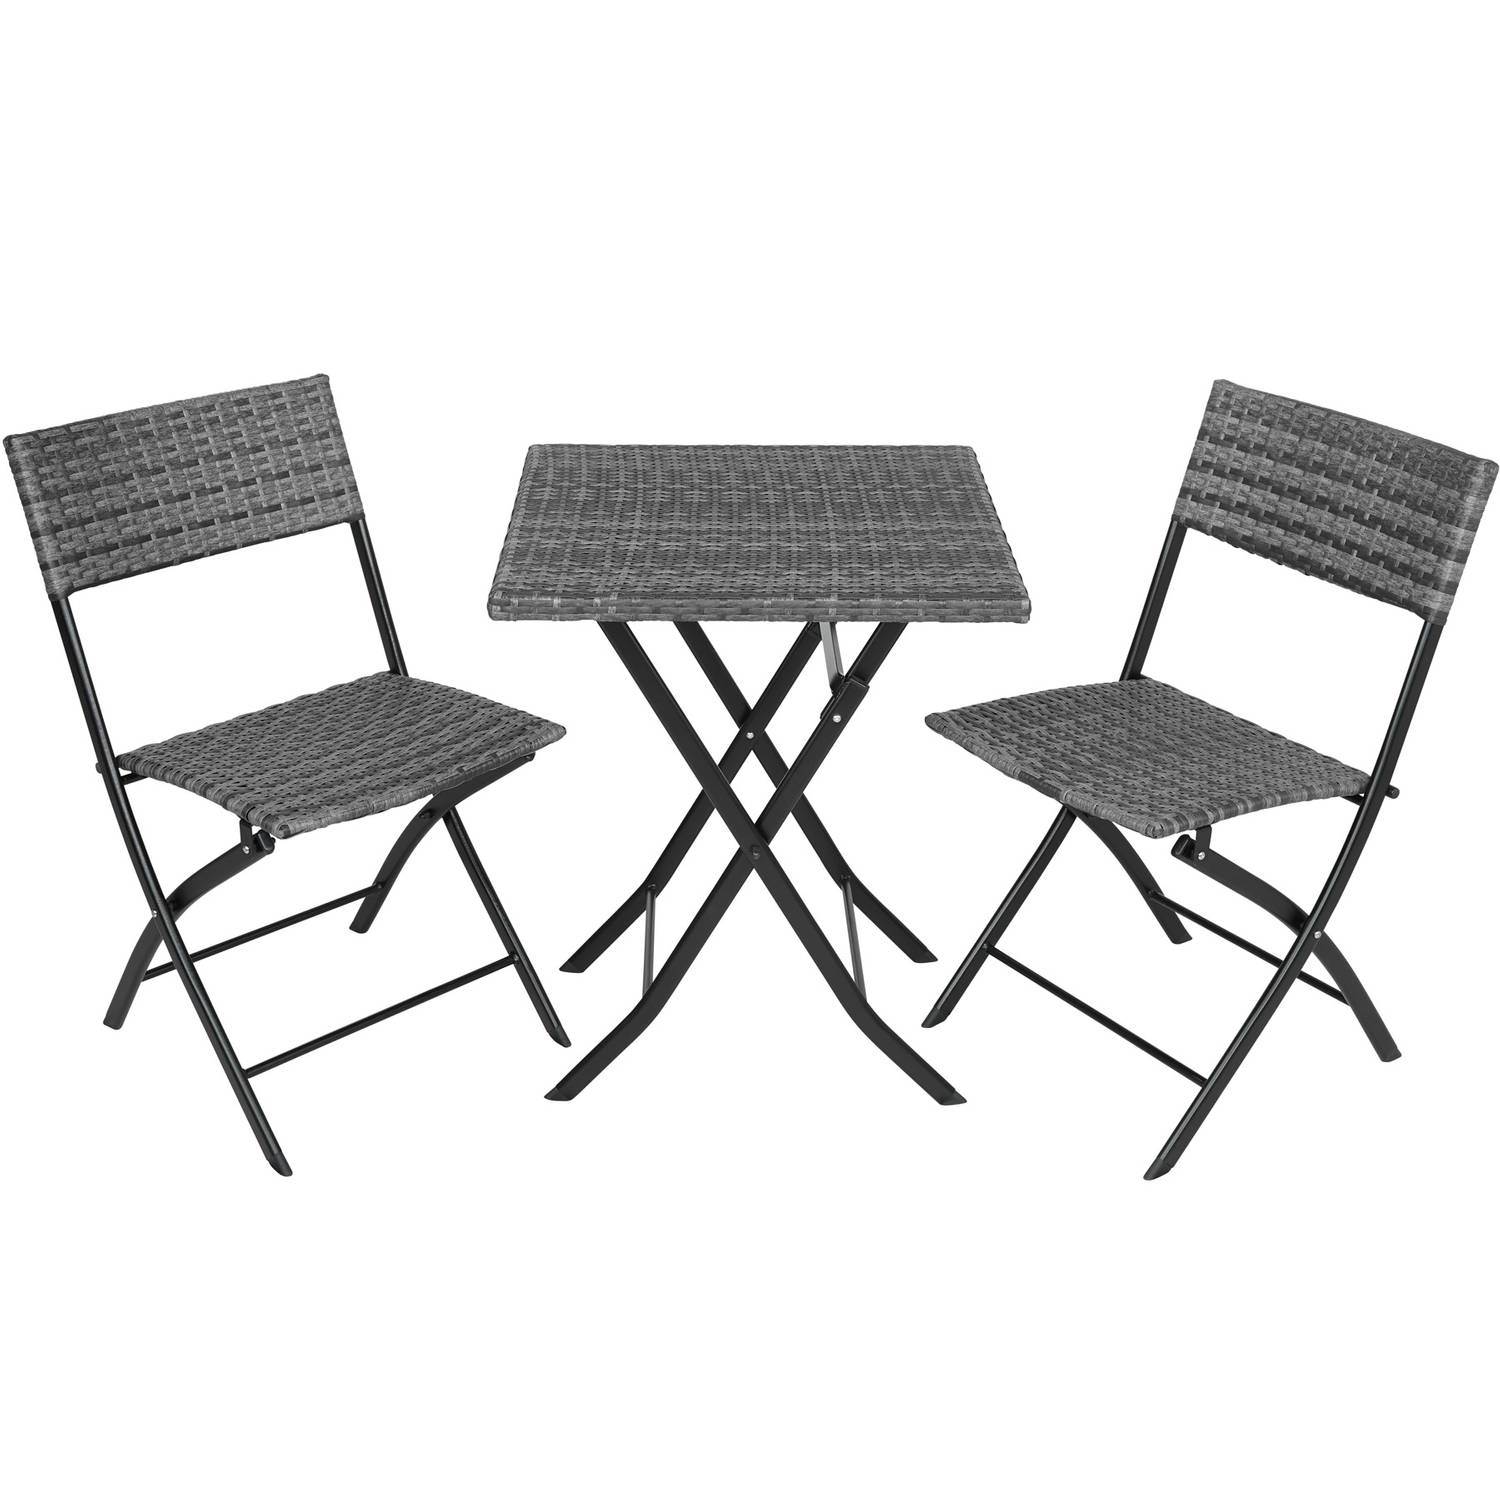 Blokker Tuinsets - tectake - Tuinset Balkonset - wicker set Trevi - 2 stoelen en een tafel - grijs - 403197 aanbieding